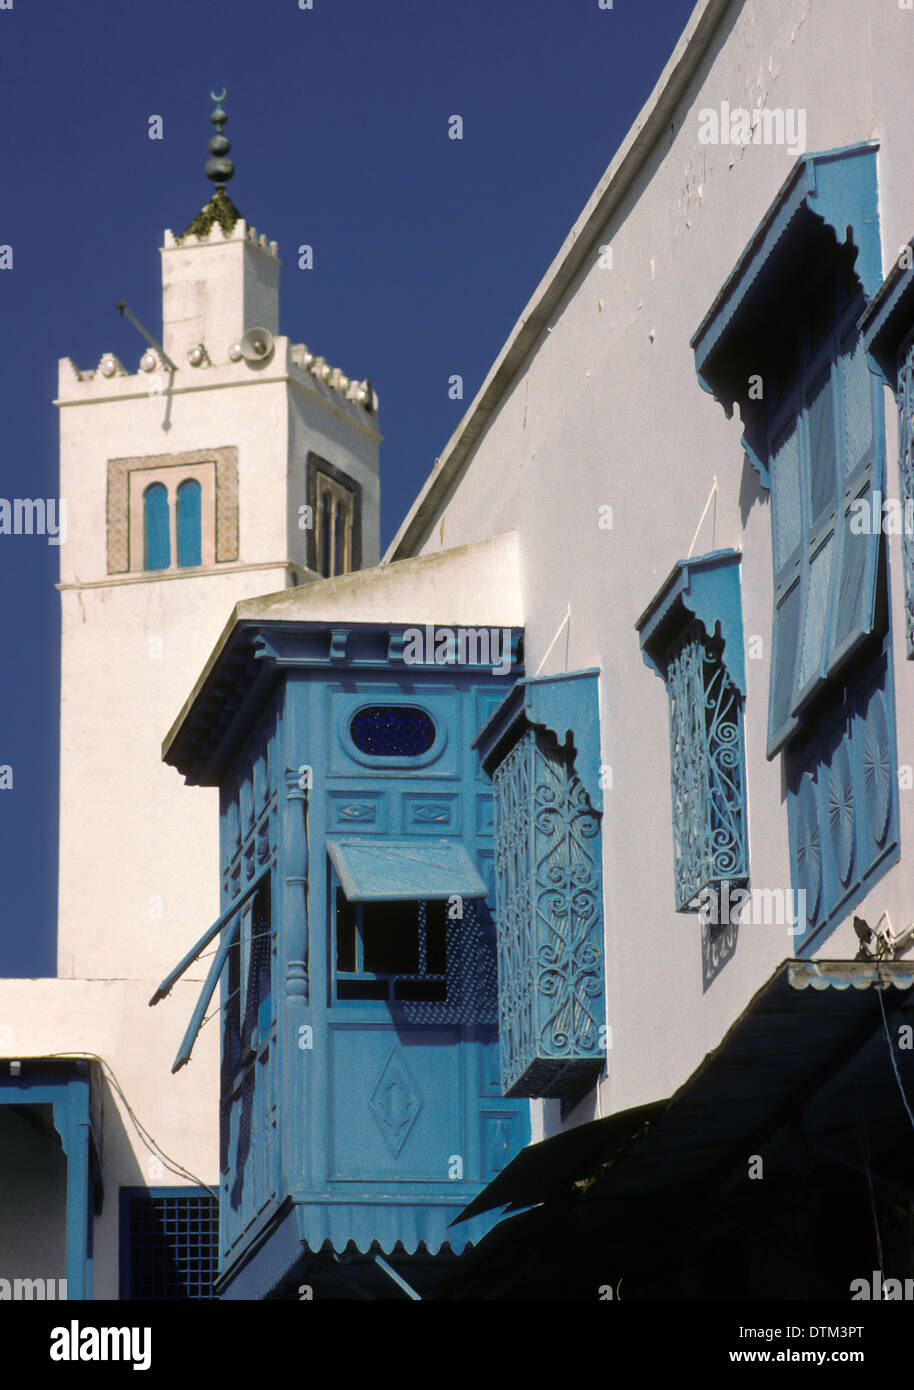 La Tunisia, Sidi Bou Said. Il minareto della moschea di Sidi Bou Said. "Harem" la finestra in primo piano. Foto Stock